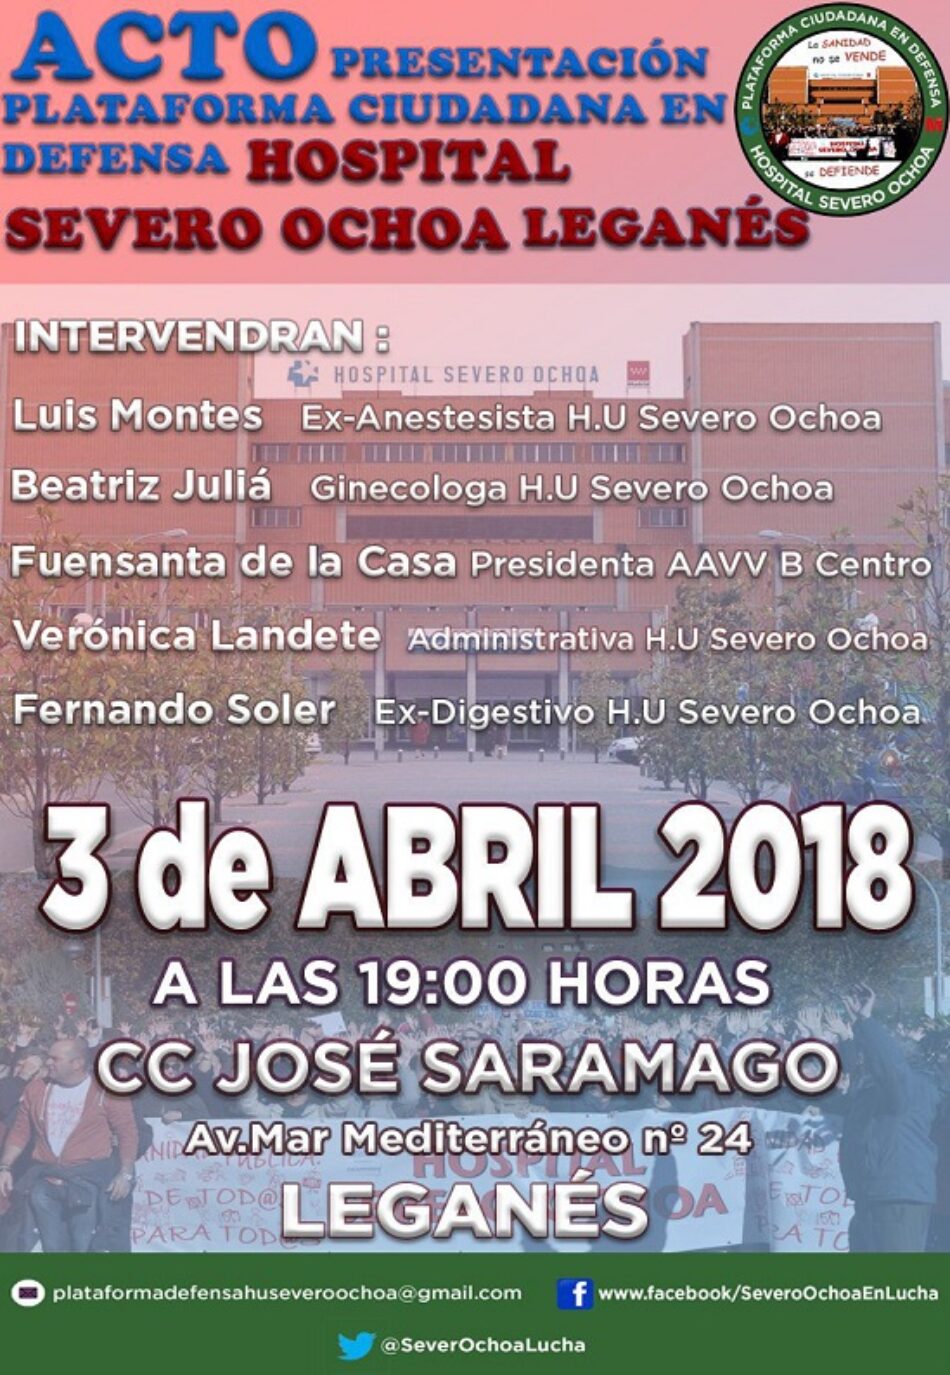 La ciudadanía sigue organizándose: nace la Plataforma Ciudadana en Defensa del Hospital Severo Ochoa